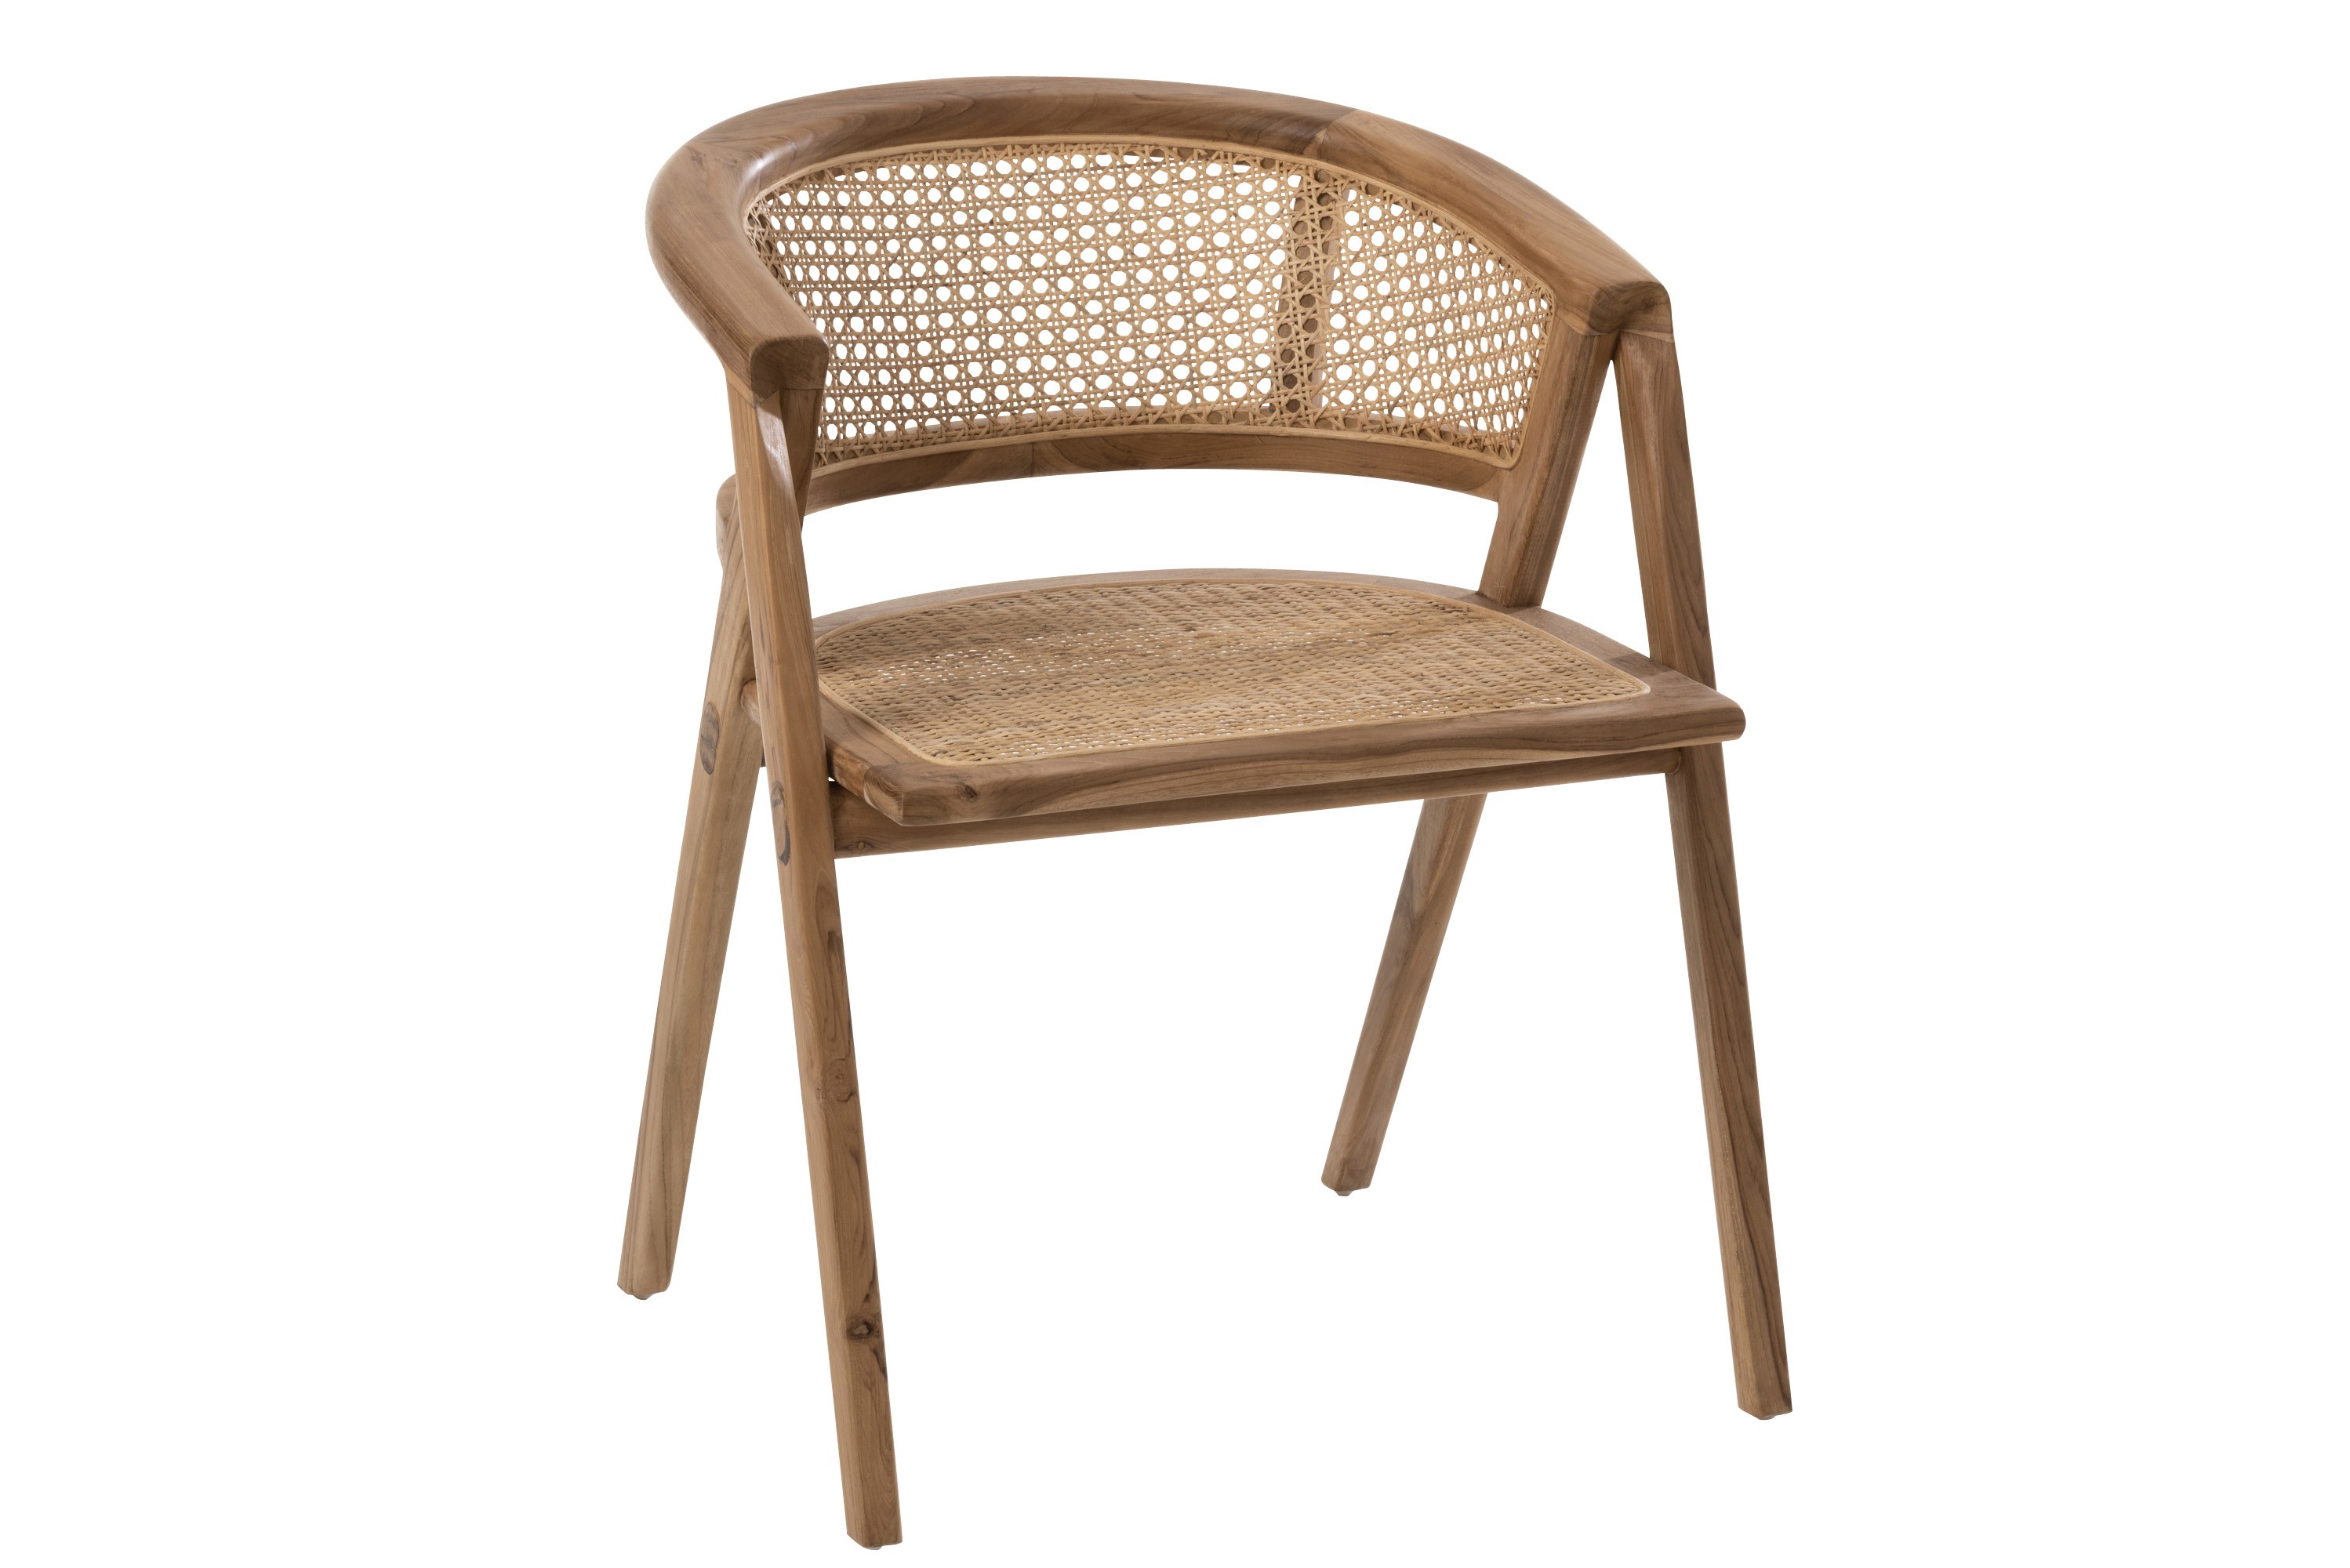 Hnědá dřevěná židle Ani Teak s bambusovým výpletem - 59*59*73cm J-Line by Jolipa